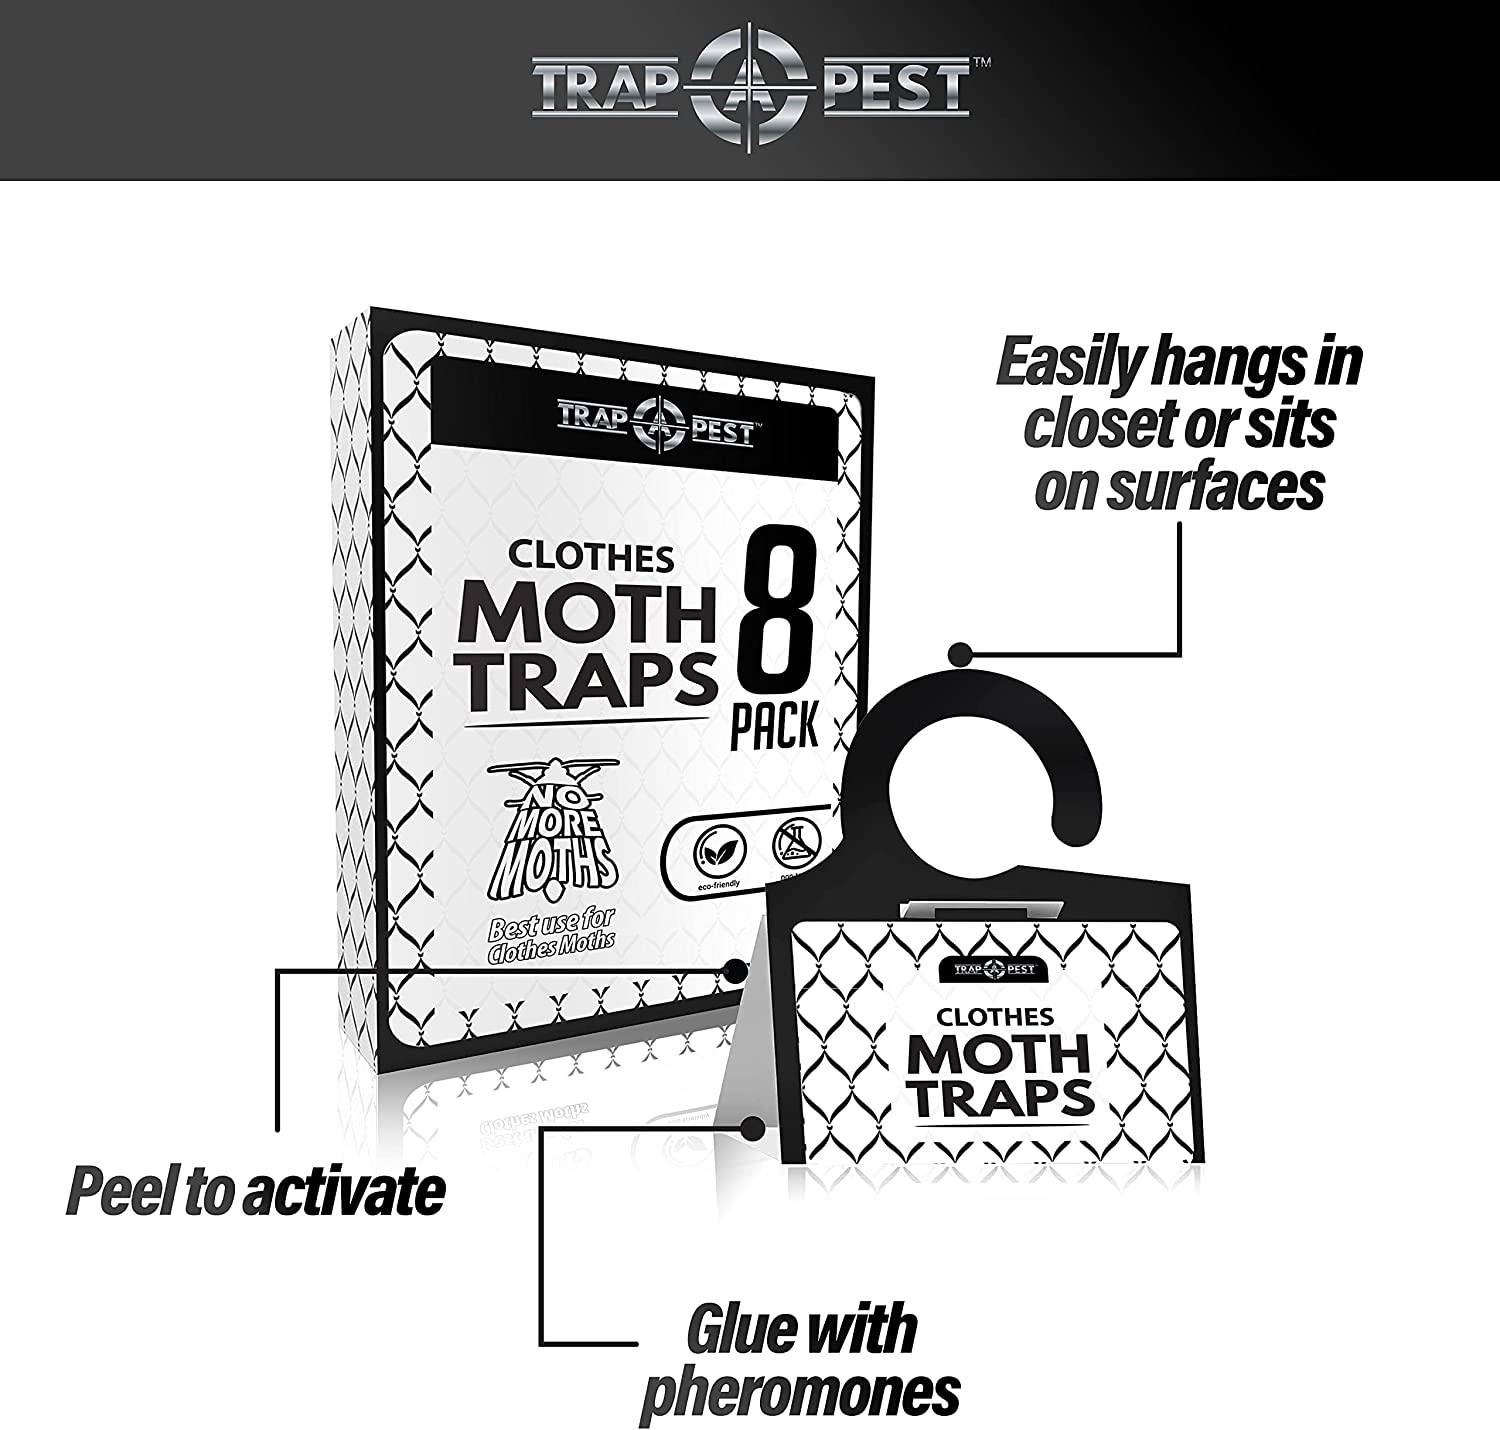 Pro Pest Clothes Moth Trap